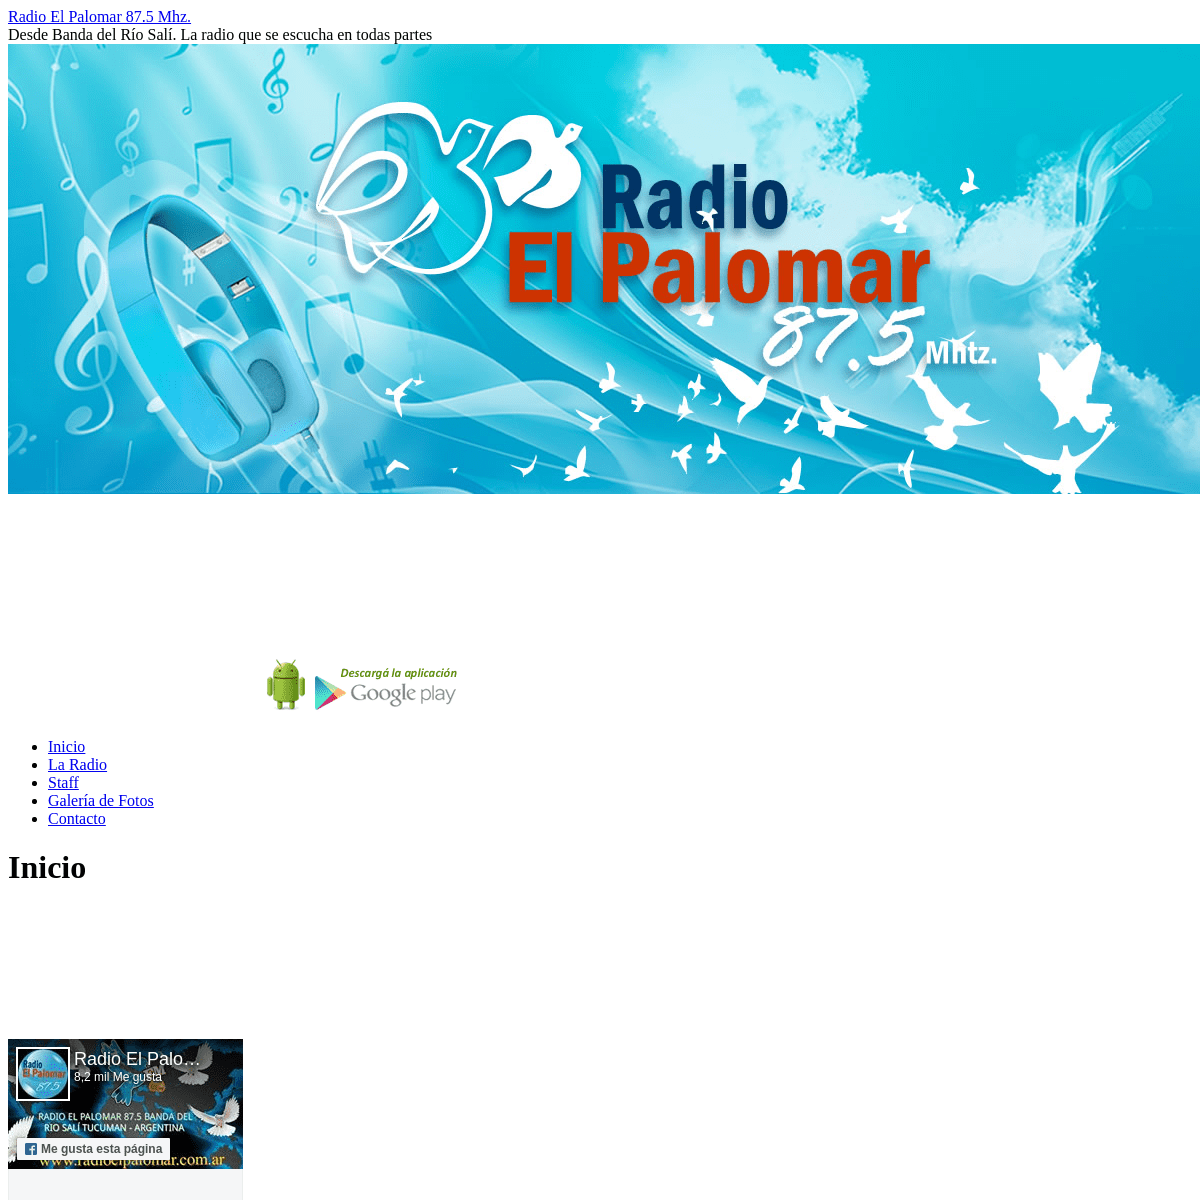 A complete backup of radioelpalomar.com.ar